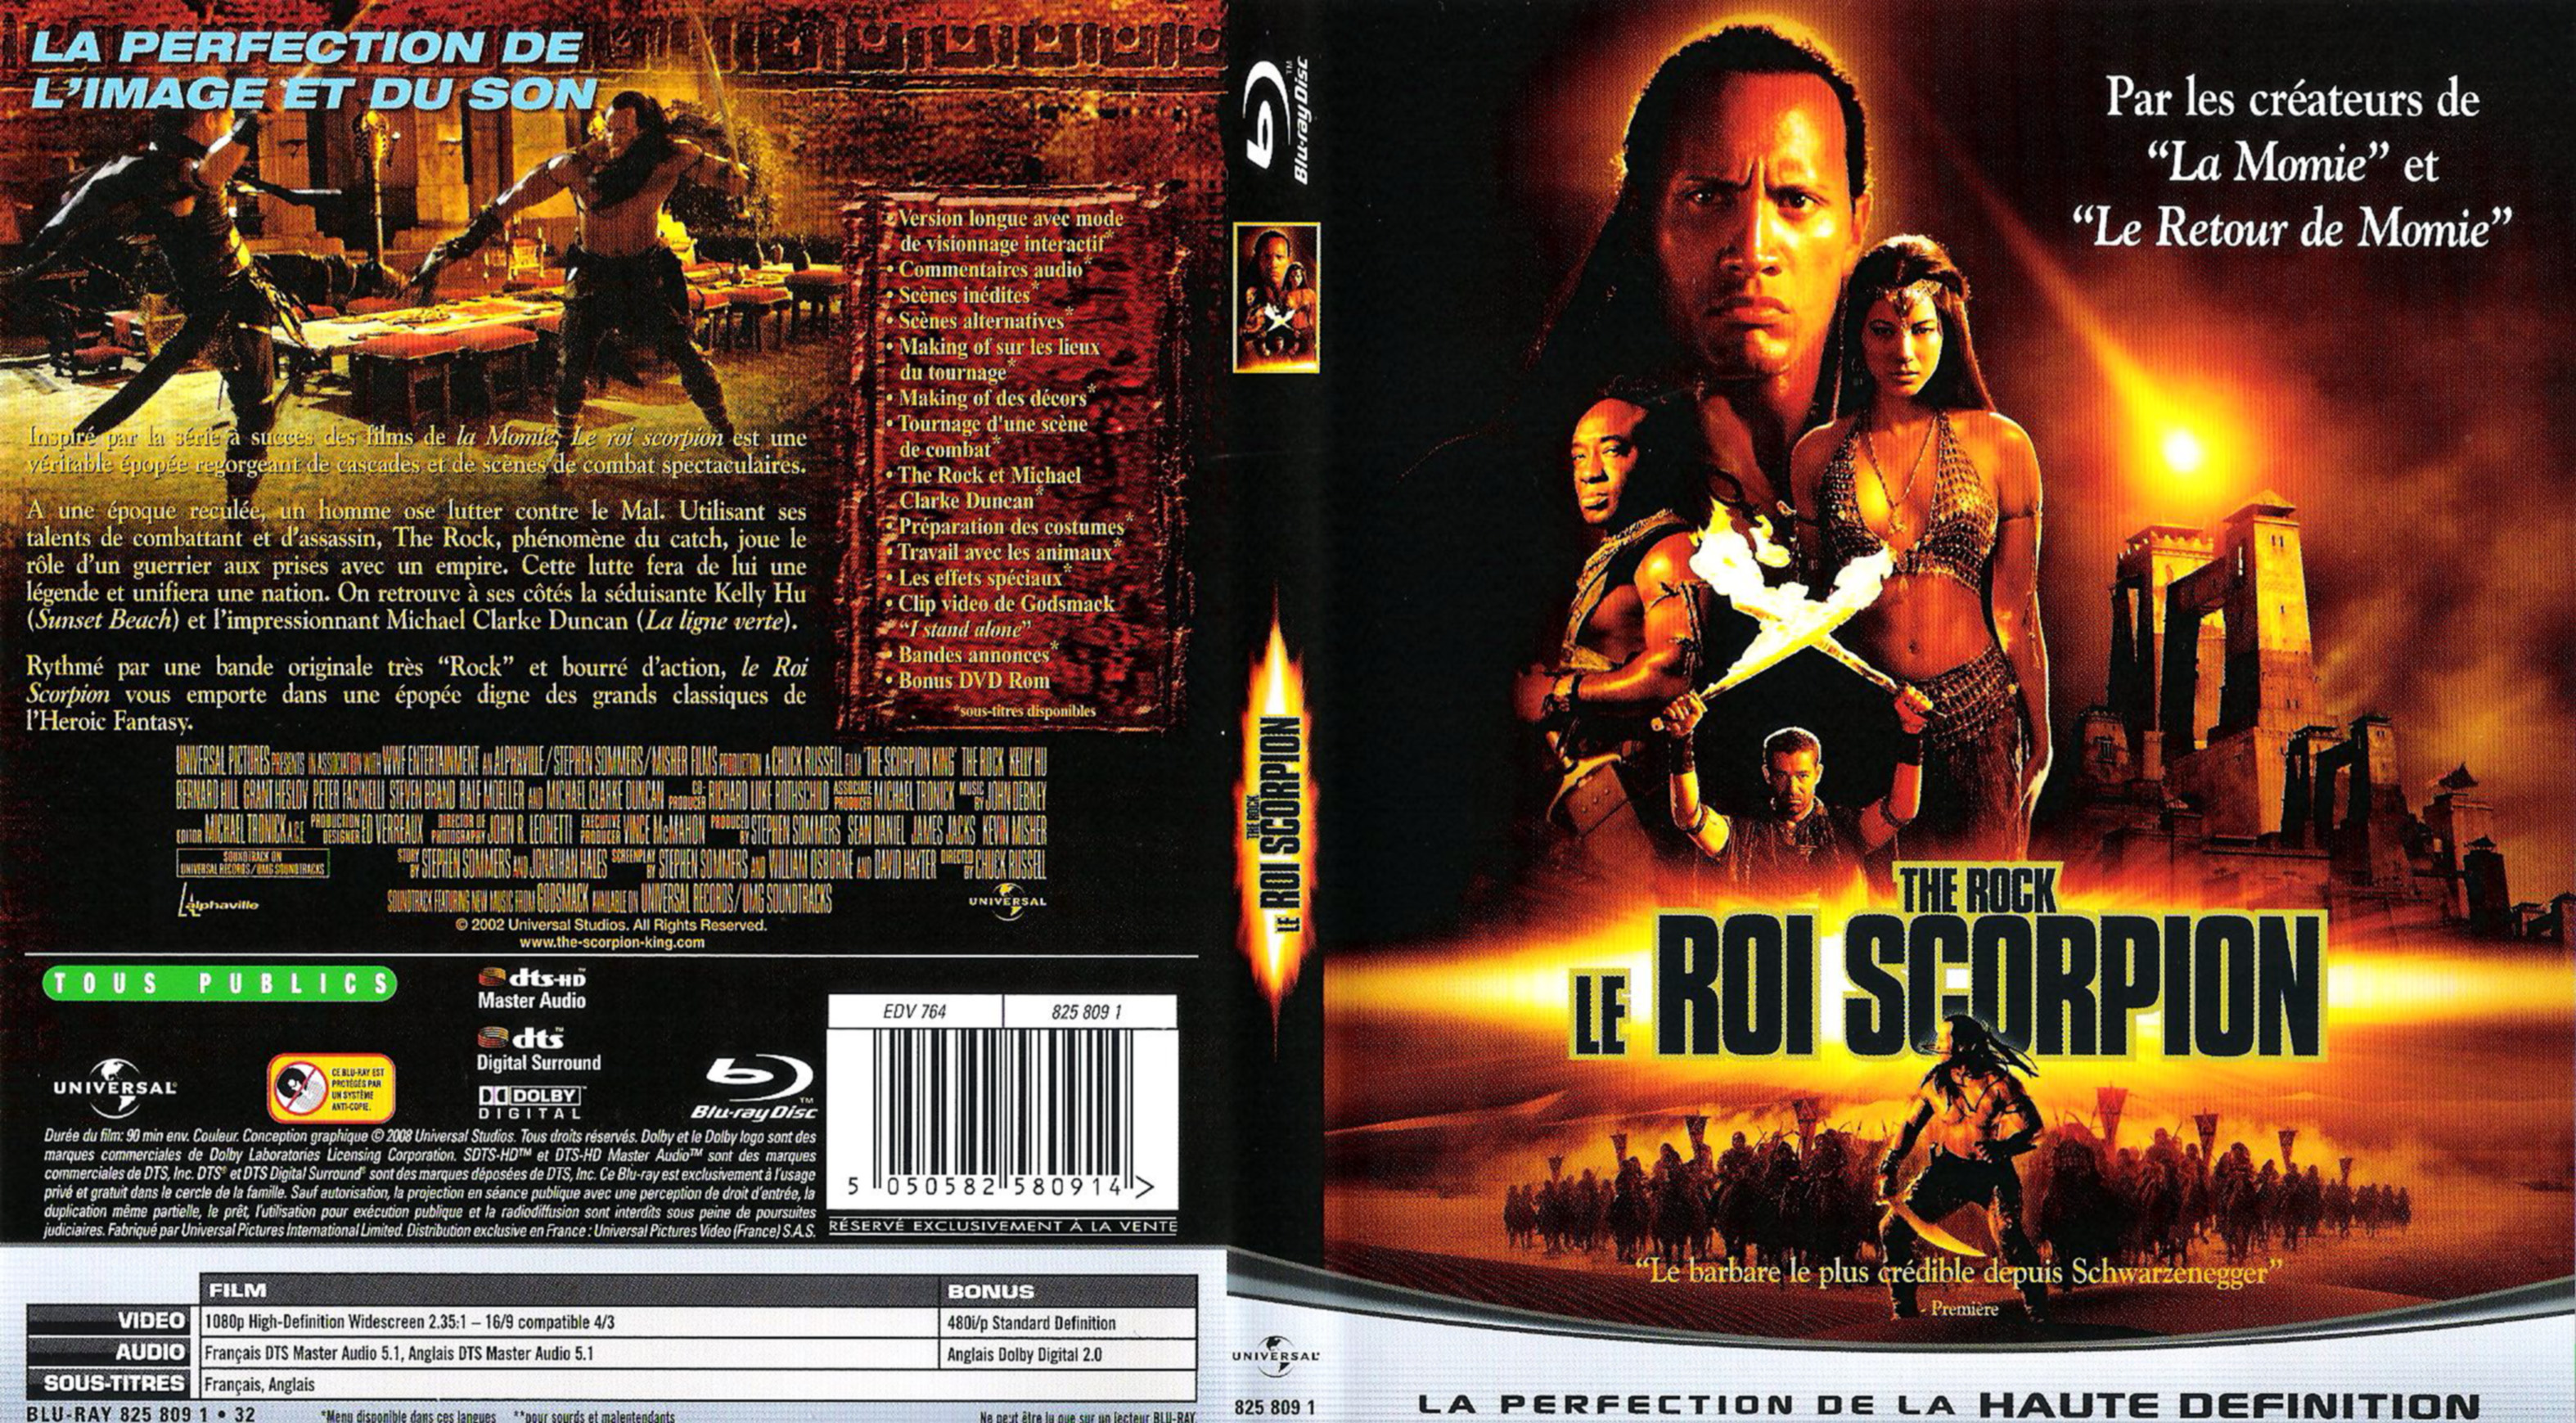 Jaquette DVD Le roi scorpion (BLU-RAY)